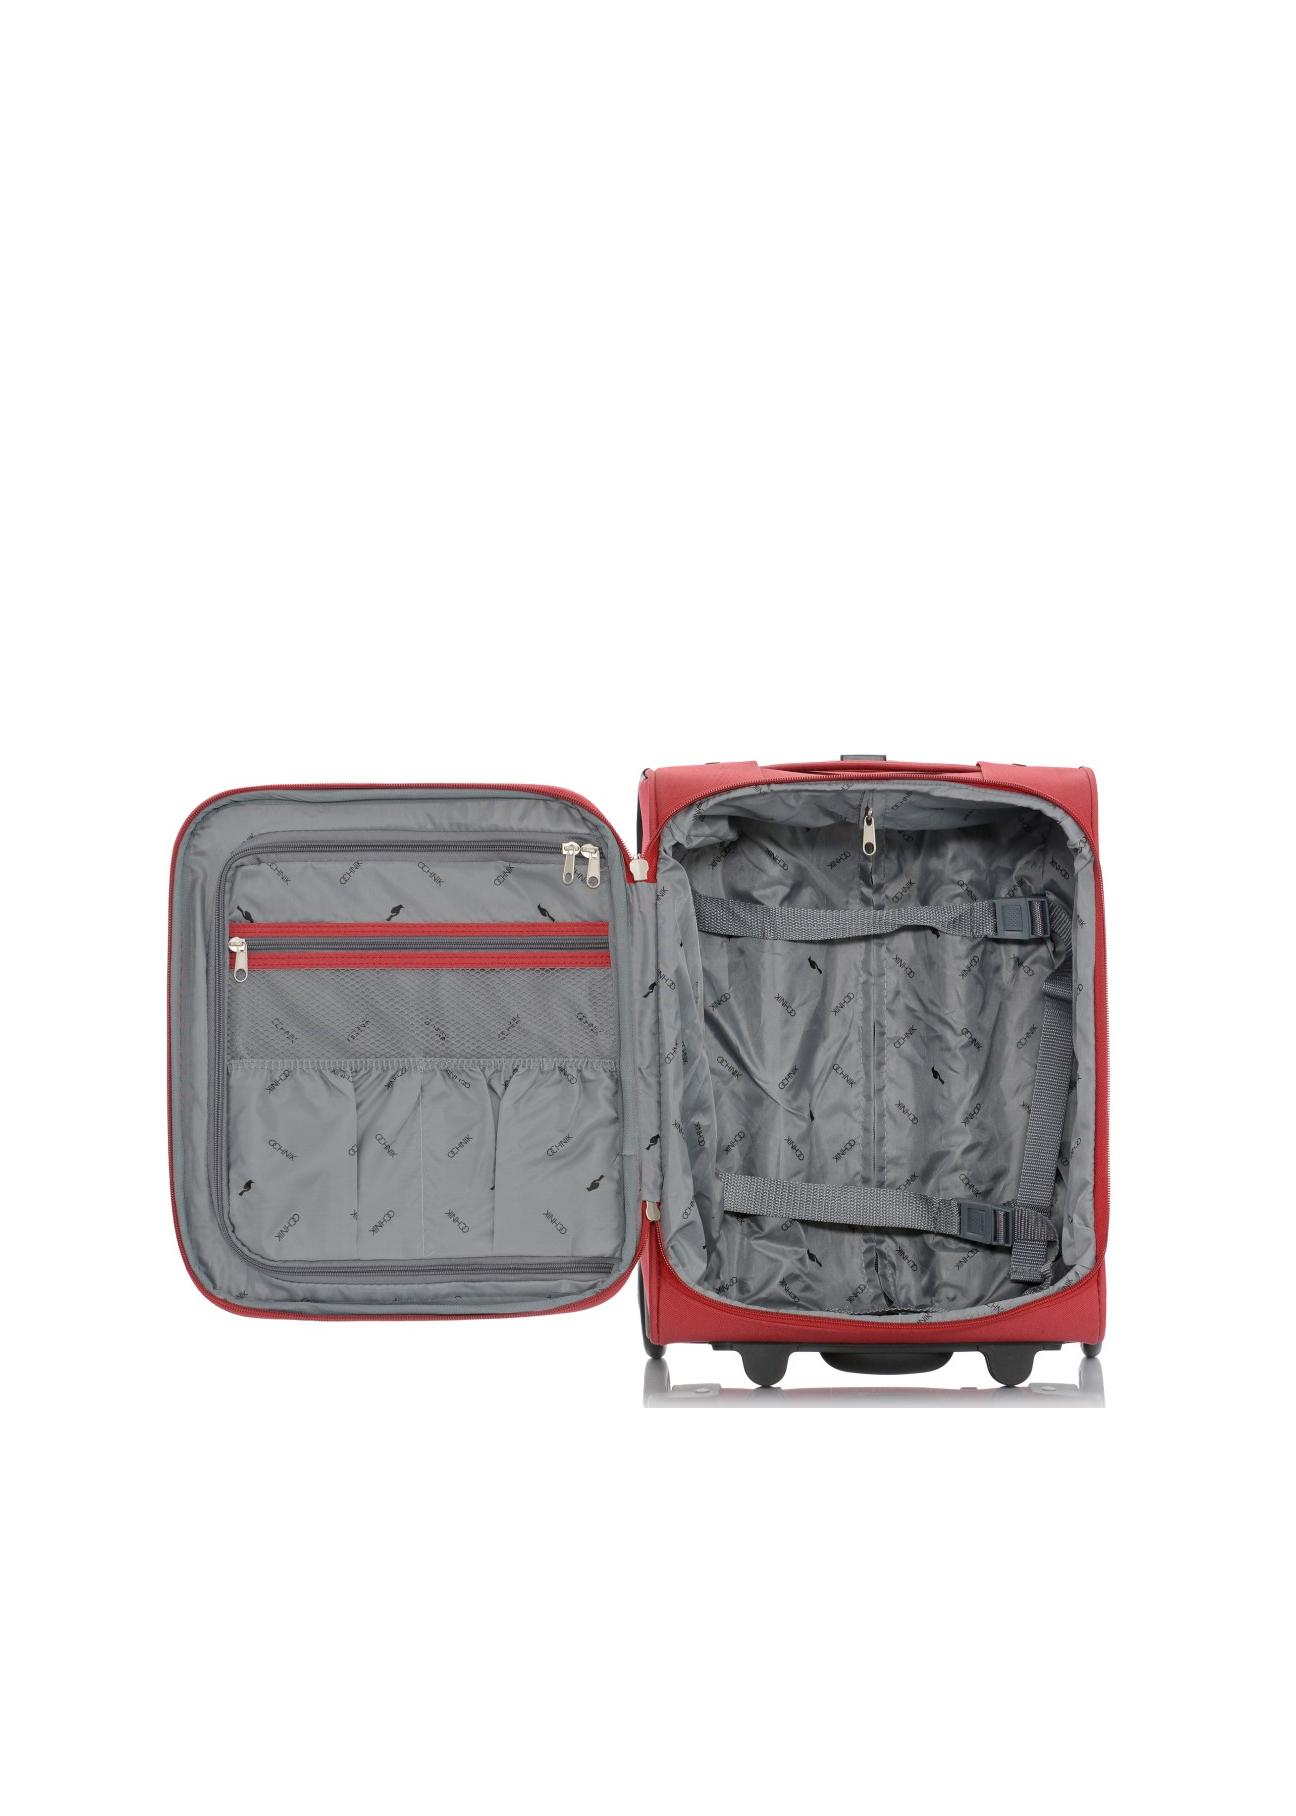 Mała walizka na kółkach WALNY-0019-41-16(ś)